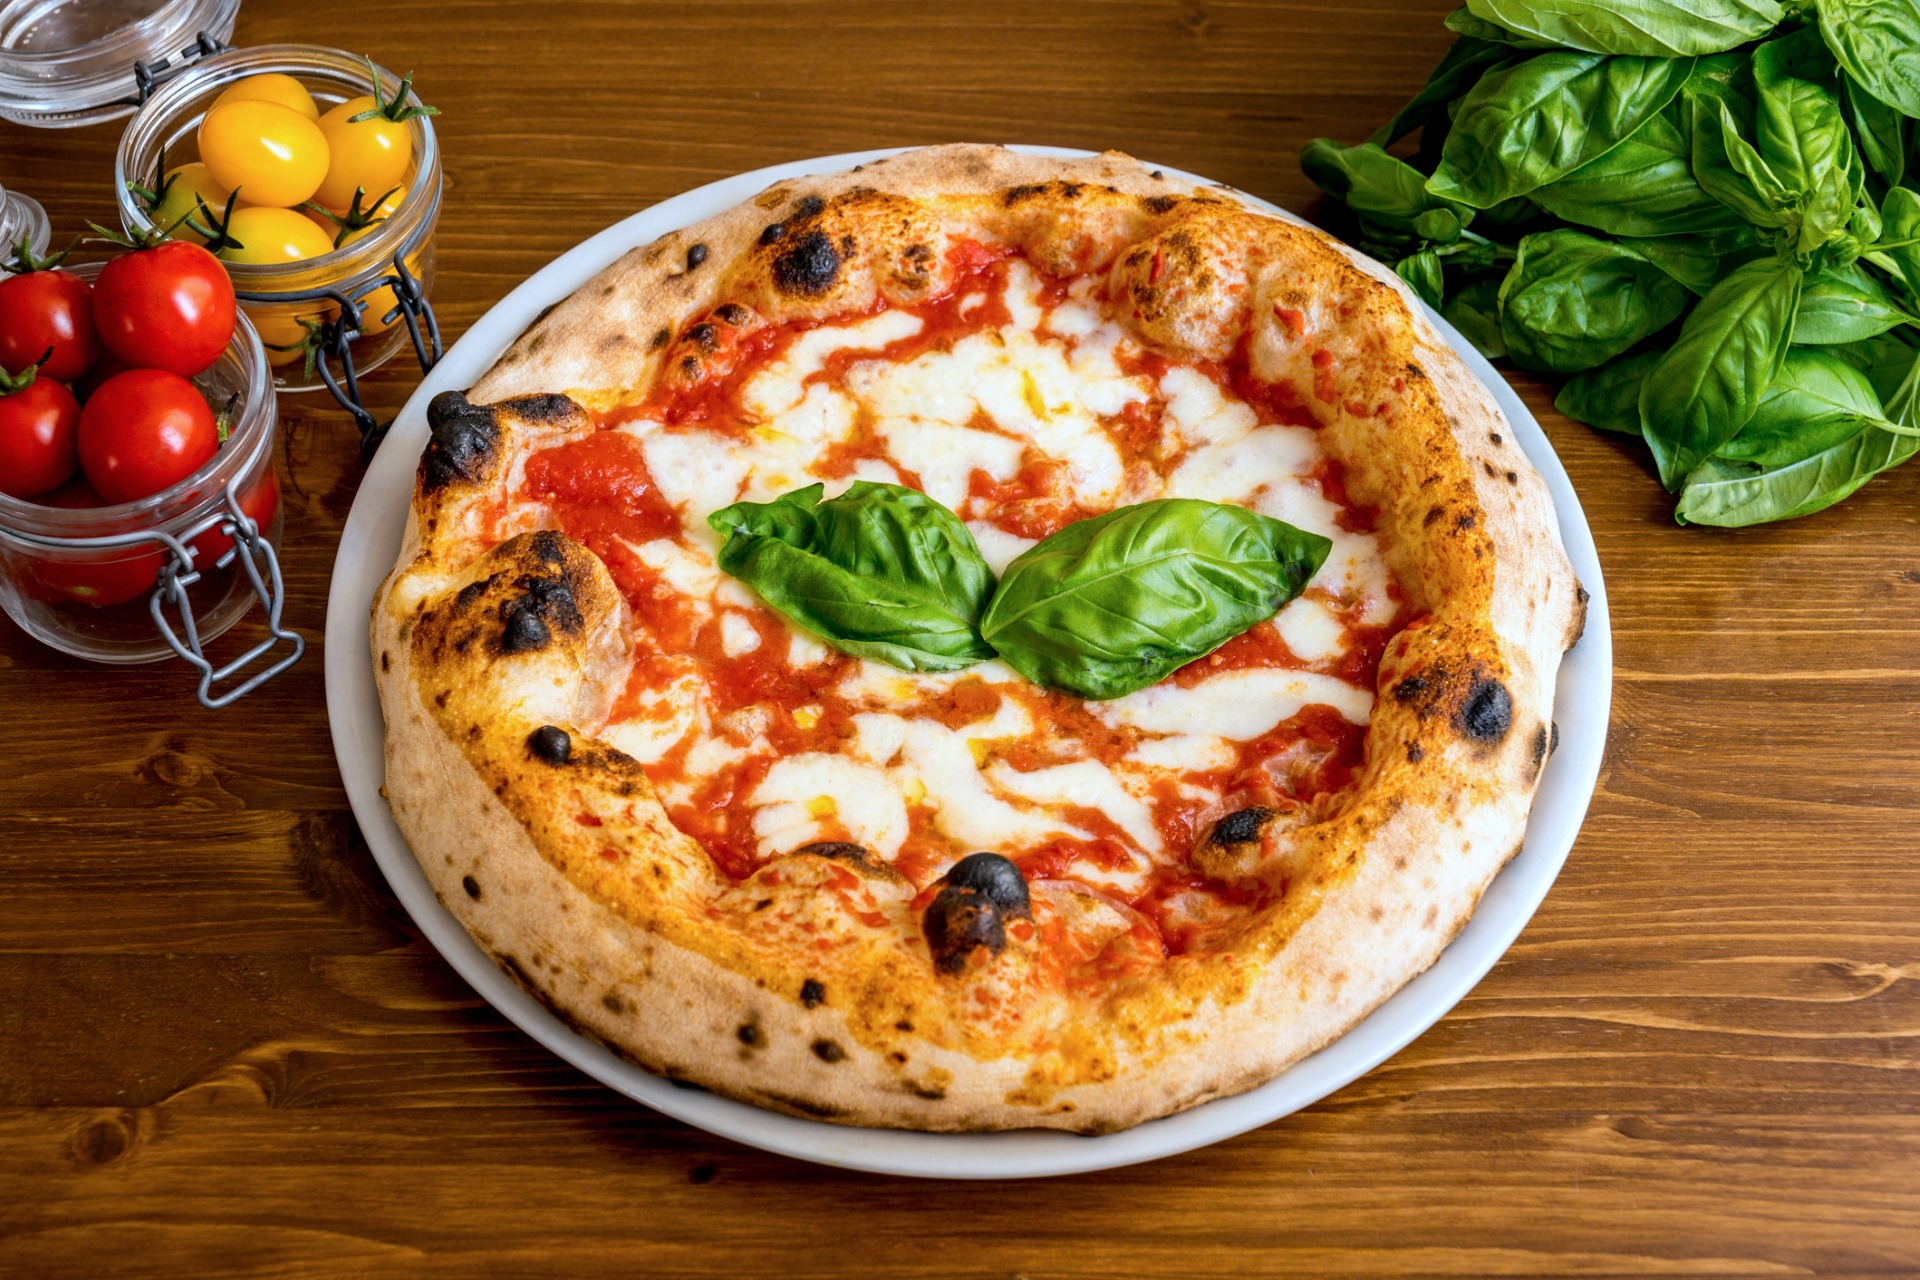 Mozzarella on Pizza: Types, Advantages, Techniques